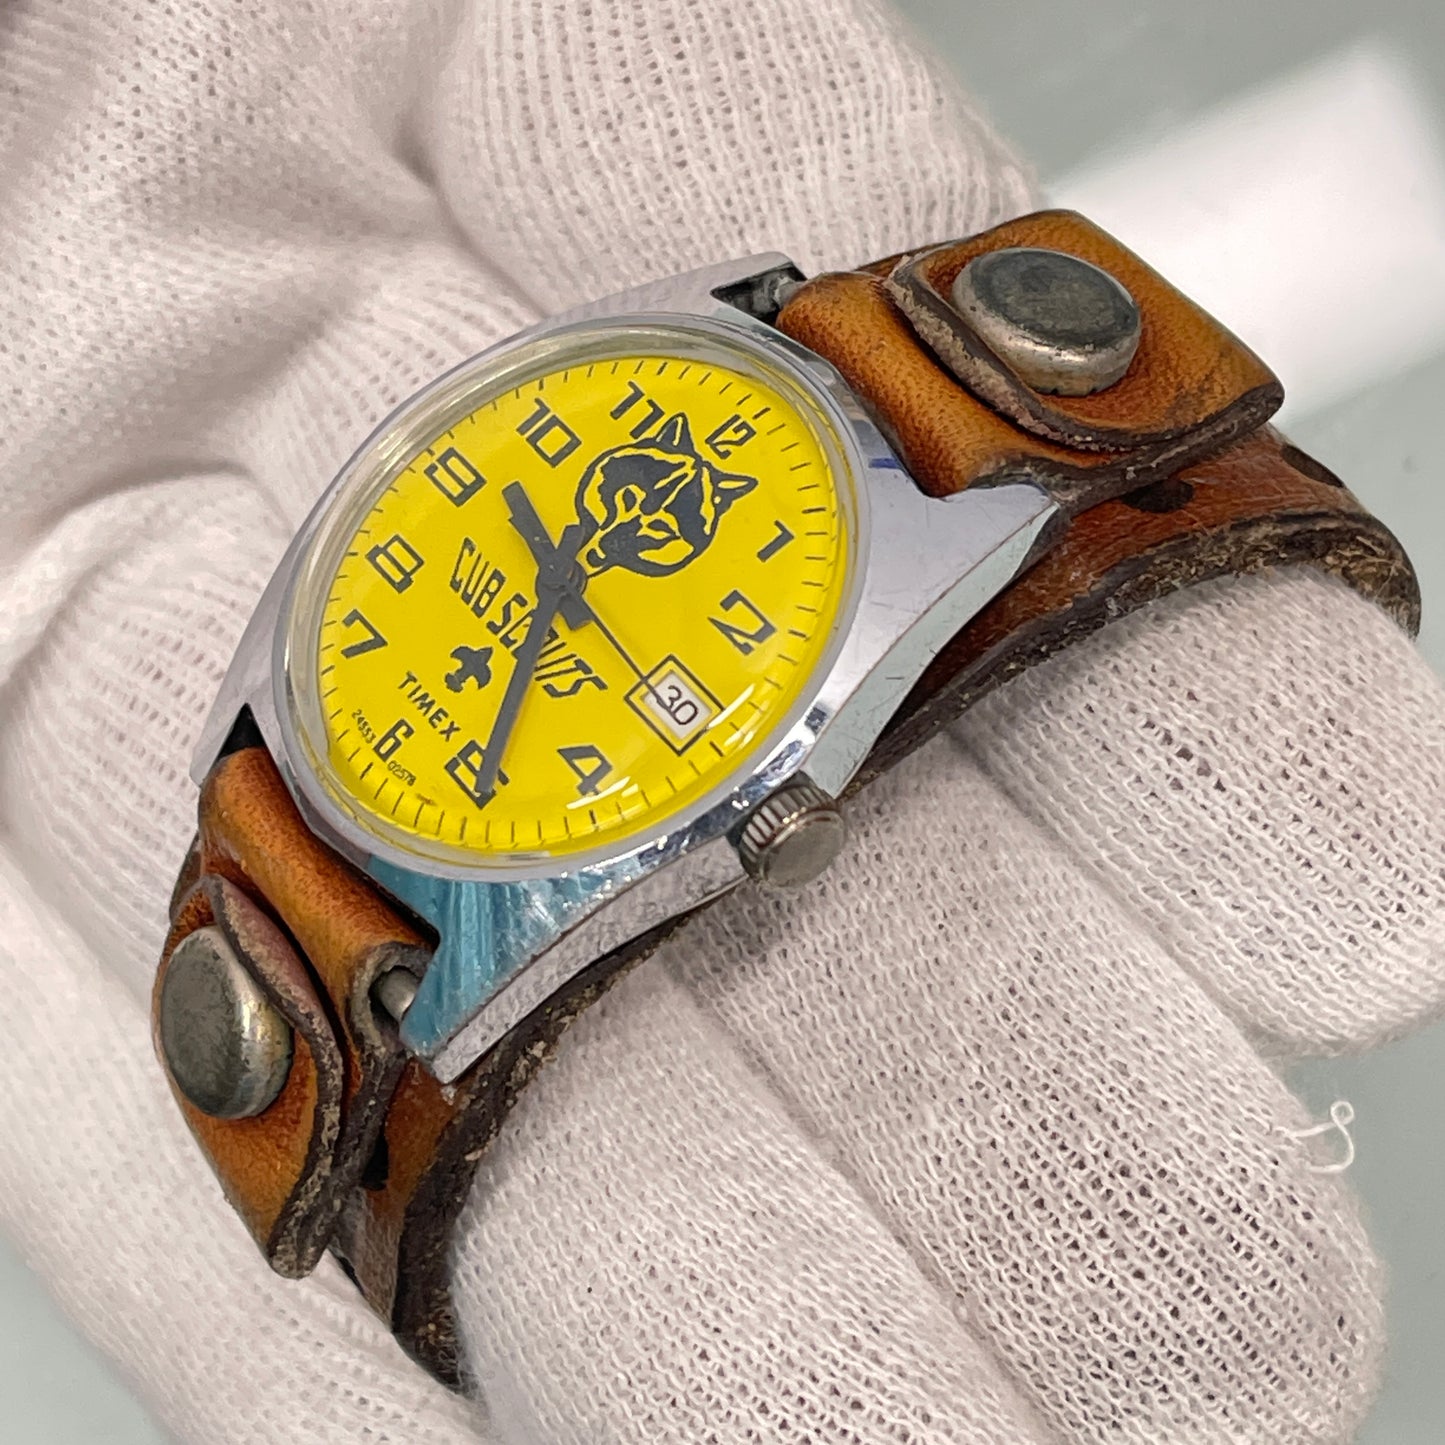 Timex Cub Scout Date Manual Wind Wristwatch c.1960